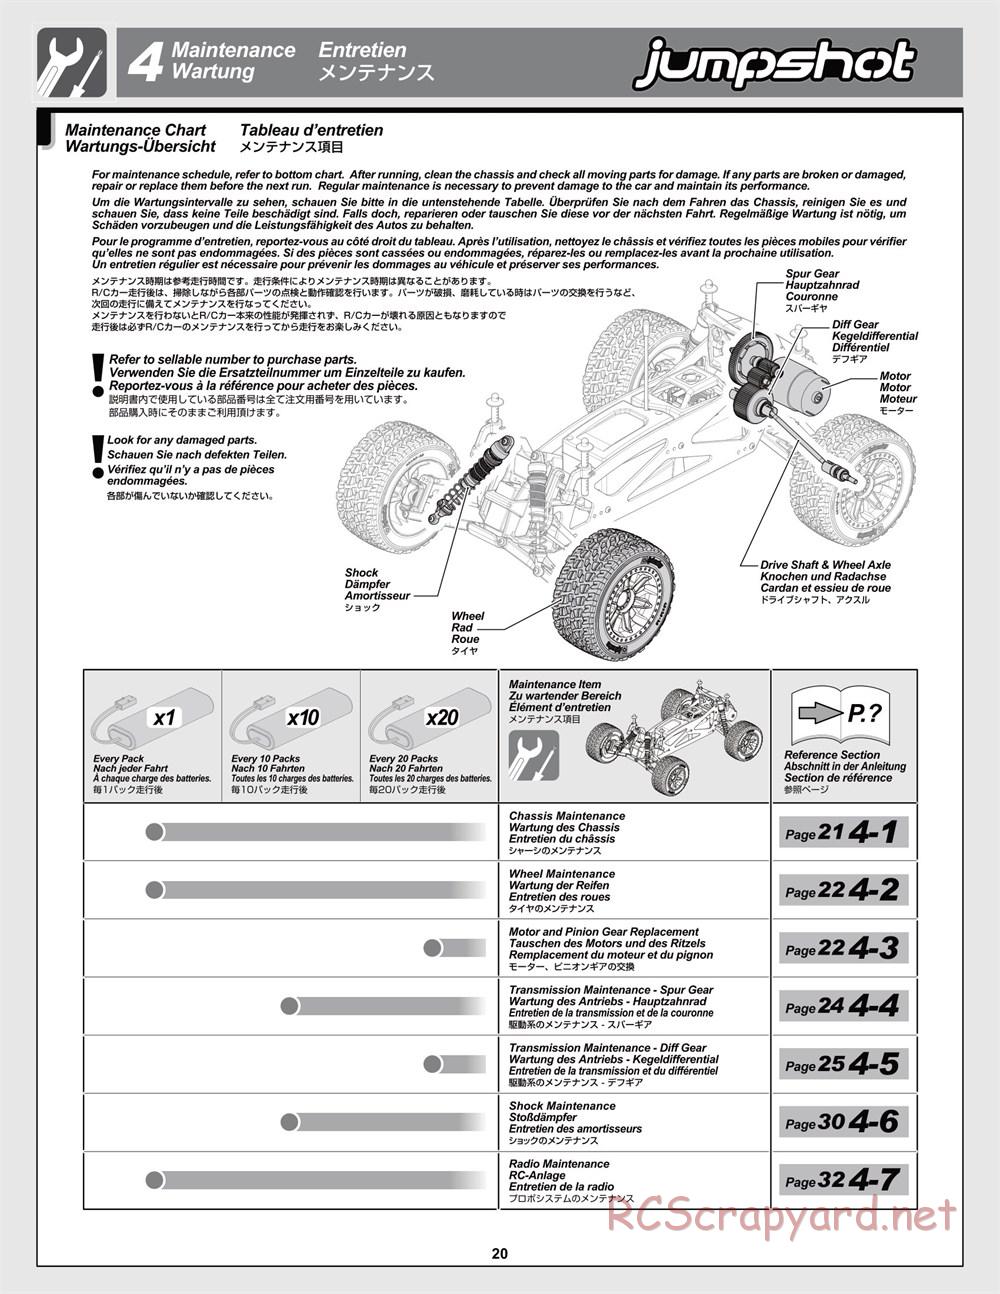 HPI - Jumpshot MT V2 - Manual - Page 20